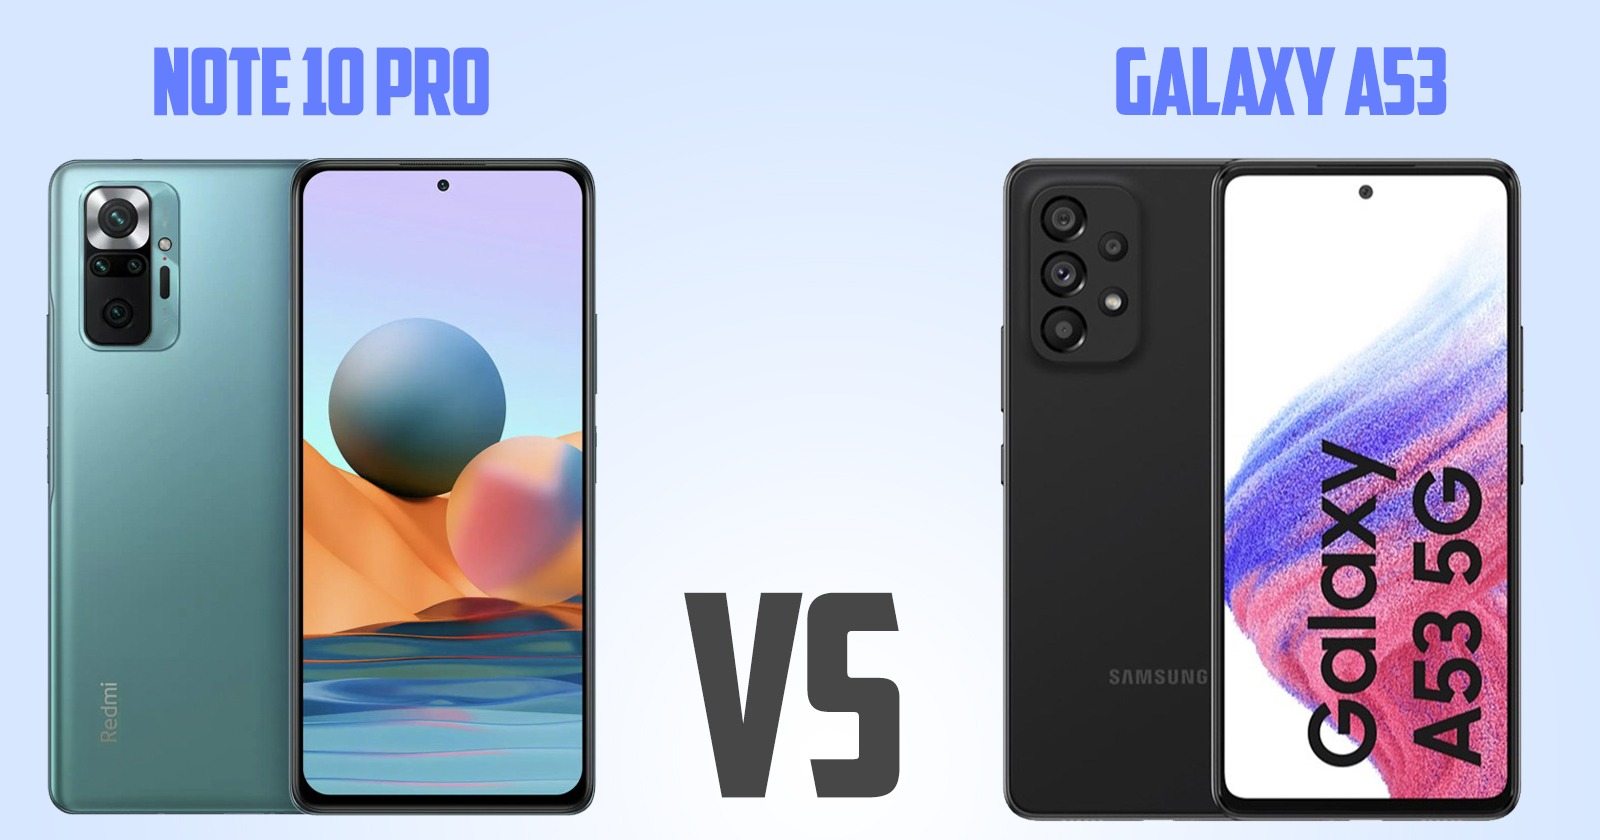 Redmi note 10 pro vs Samsung Galaxy A53